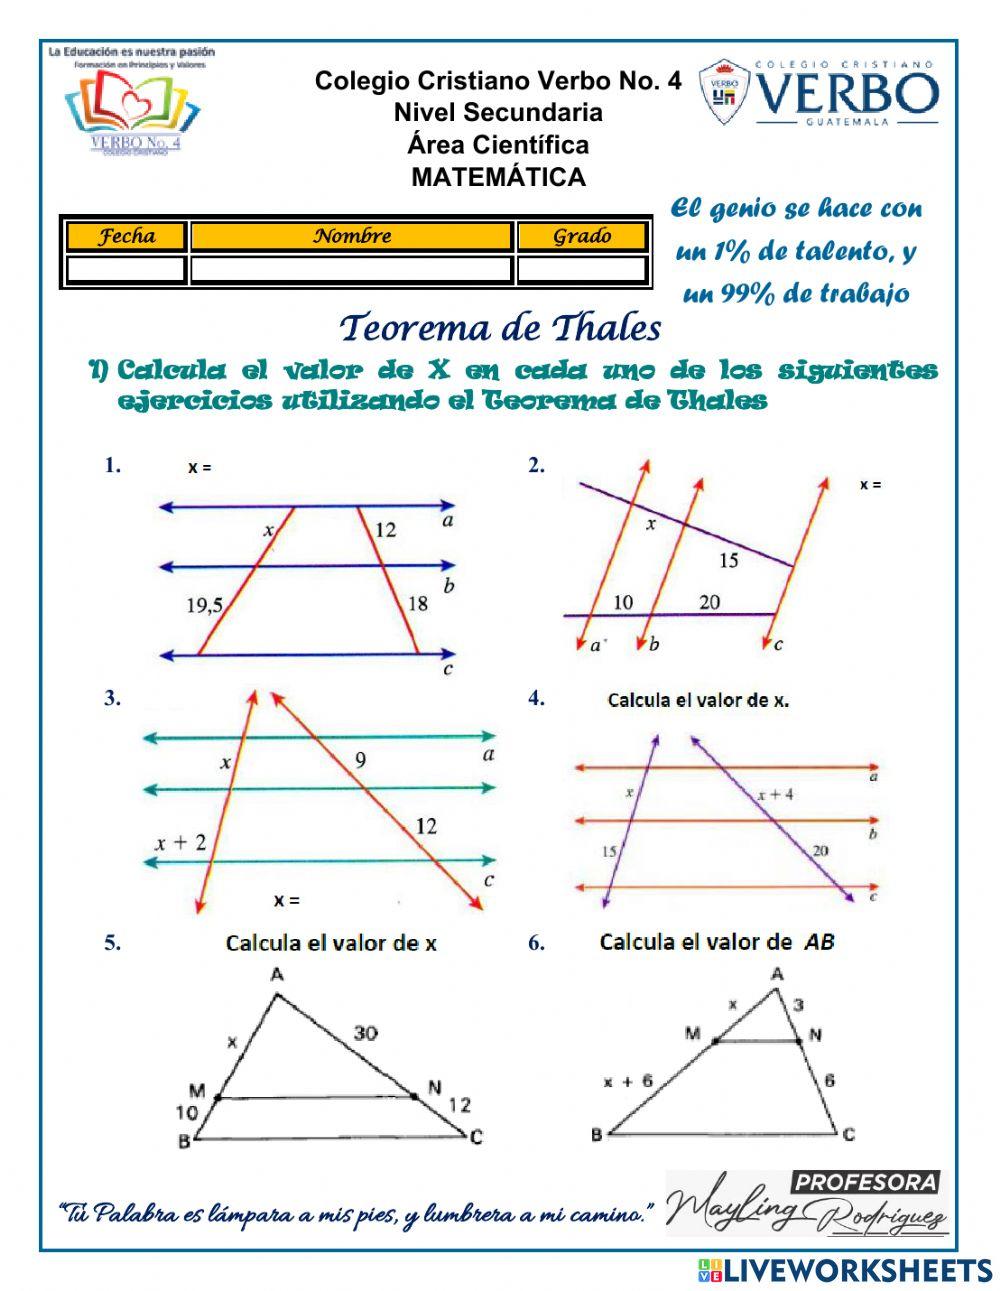 Teorema de Thales y Pitágoras